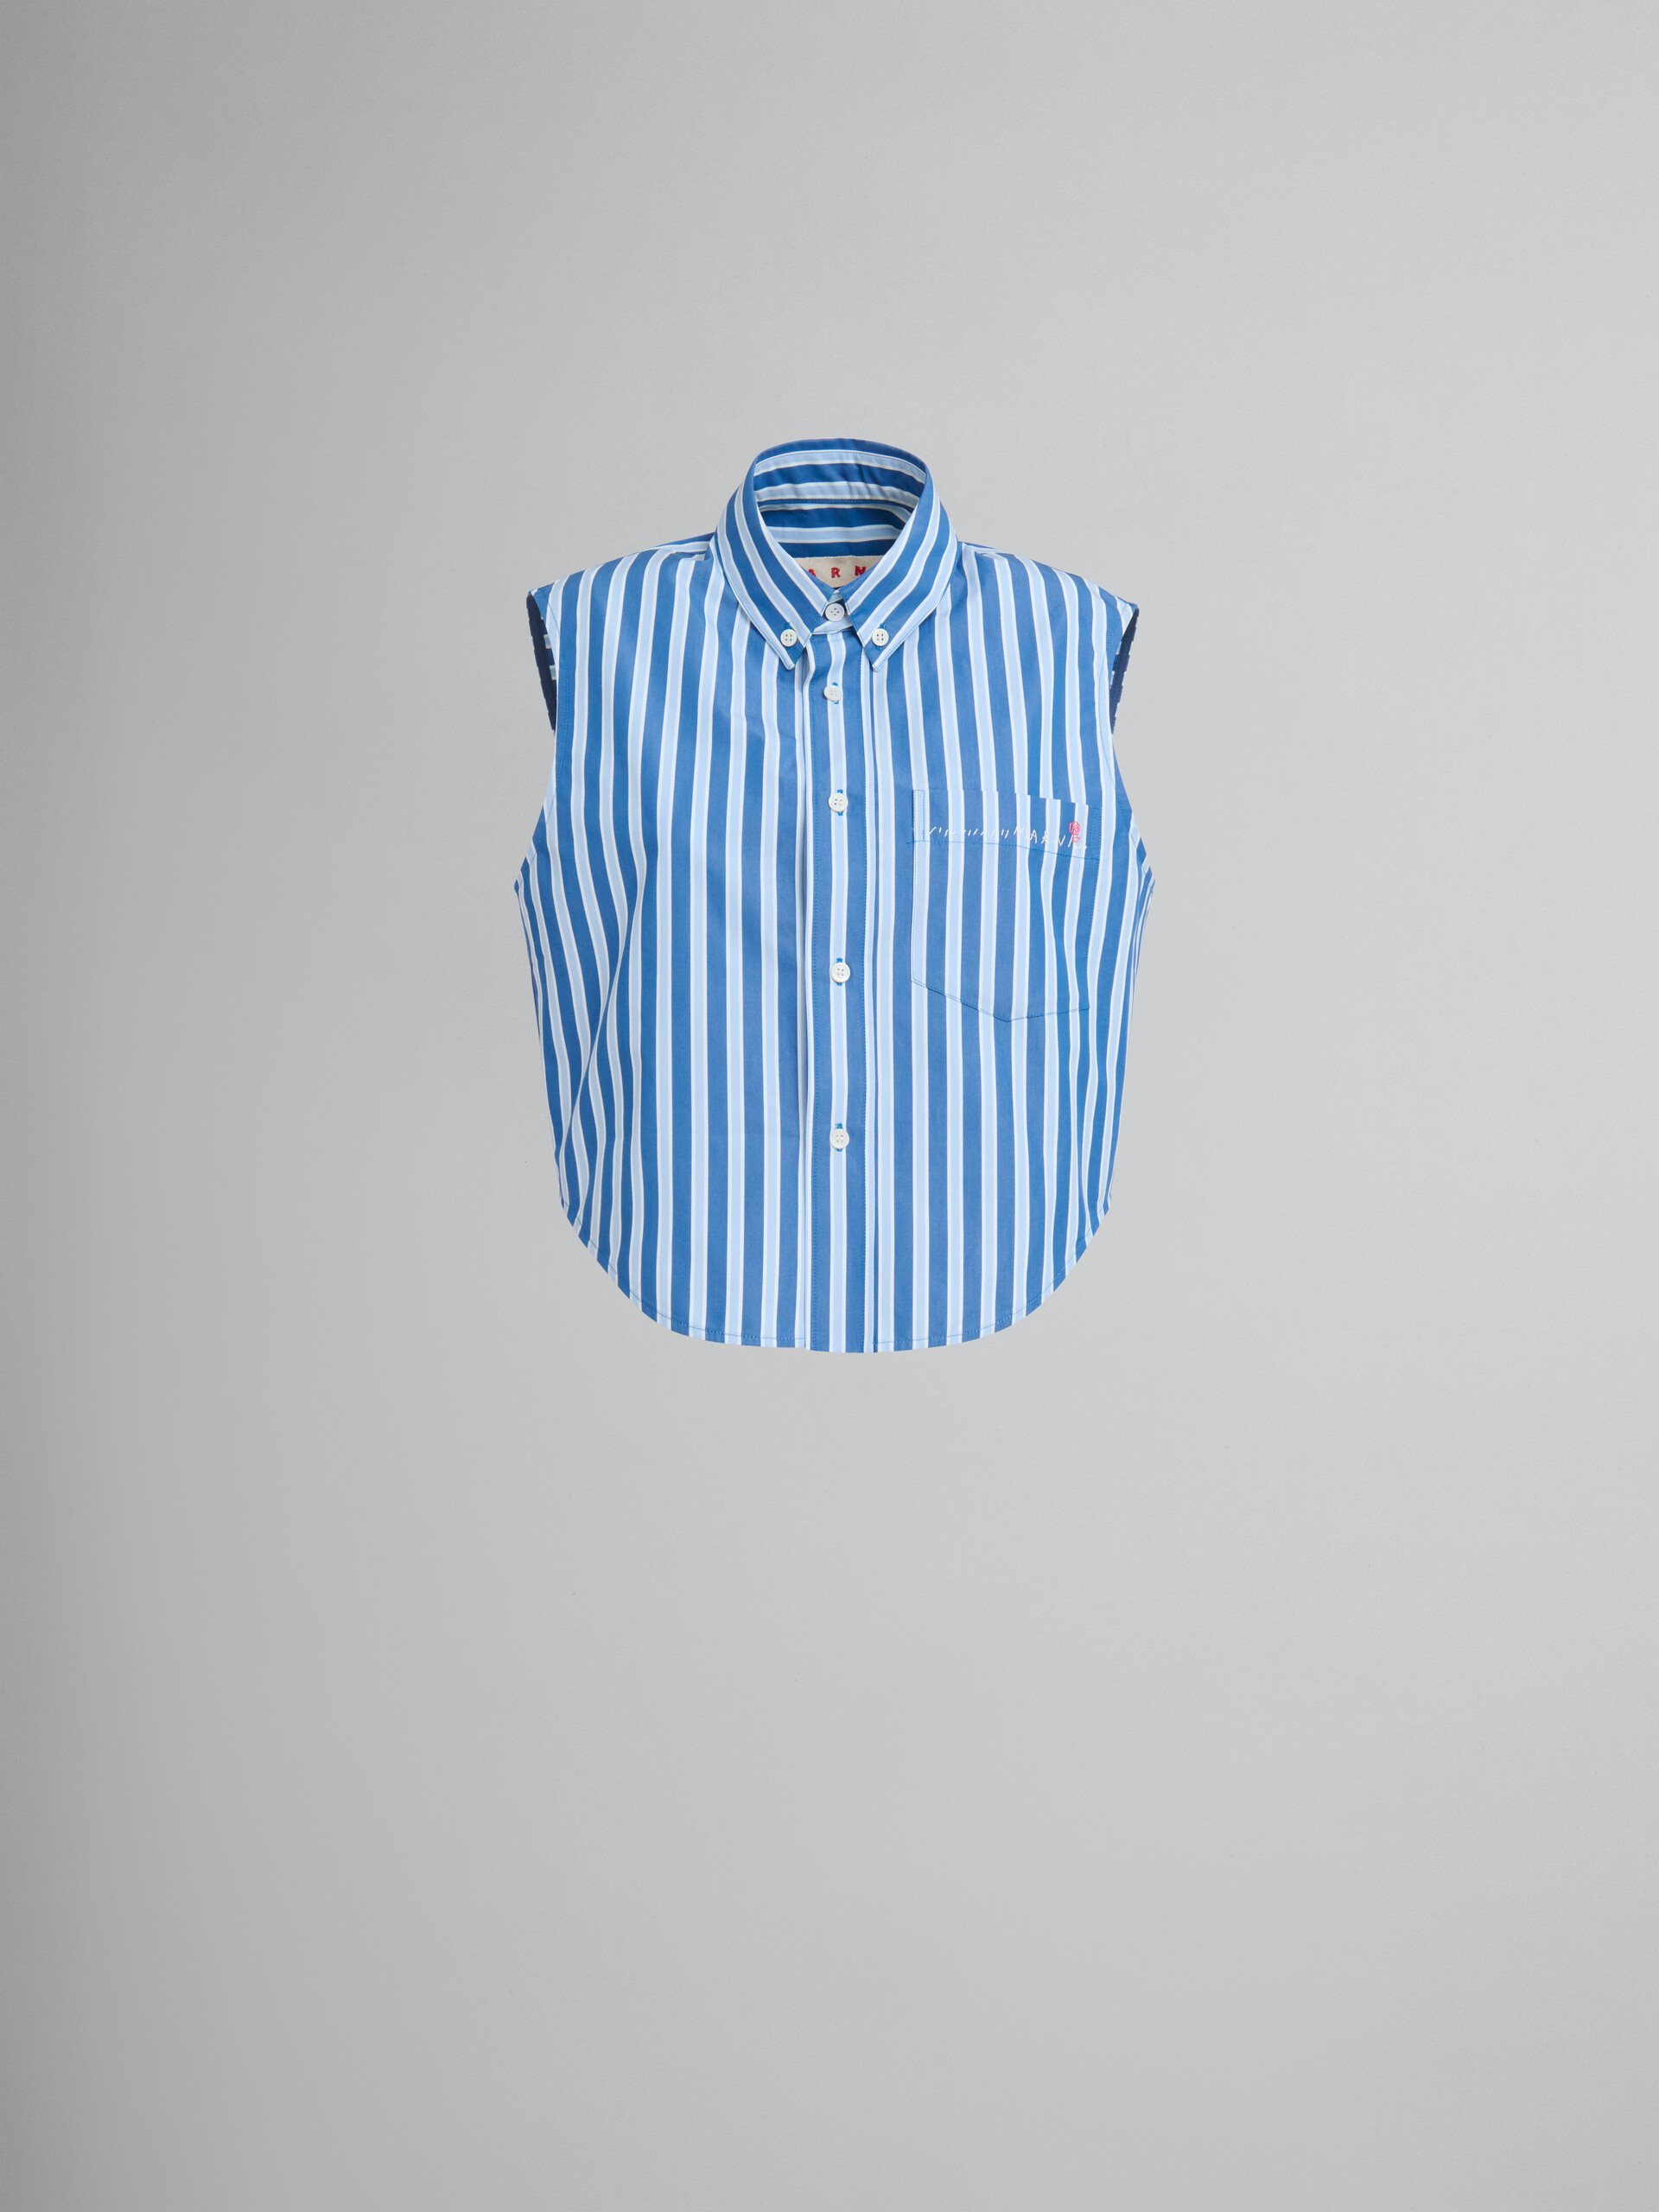 Chemise sans manches en popeline biologique bleue et blanche à rayures - Chemises - Image 1